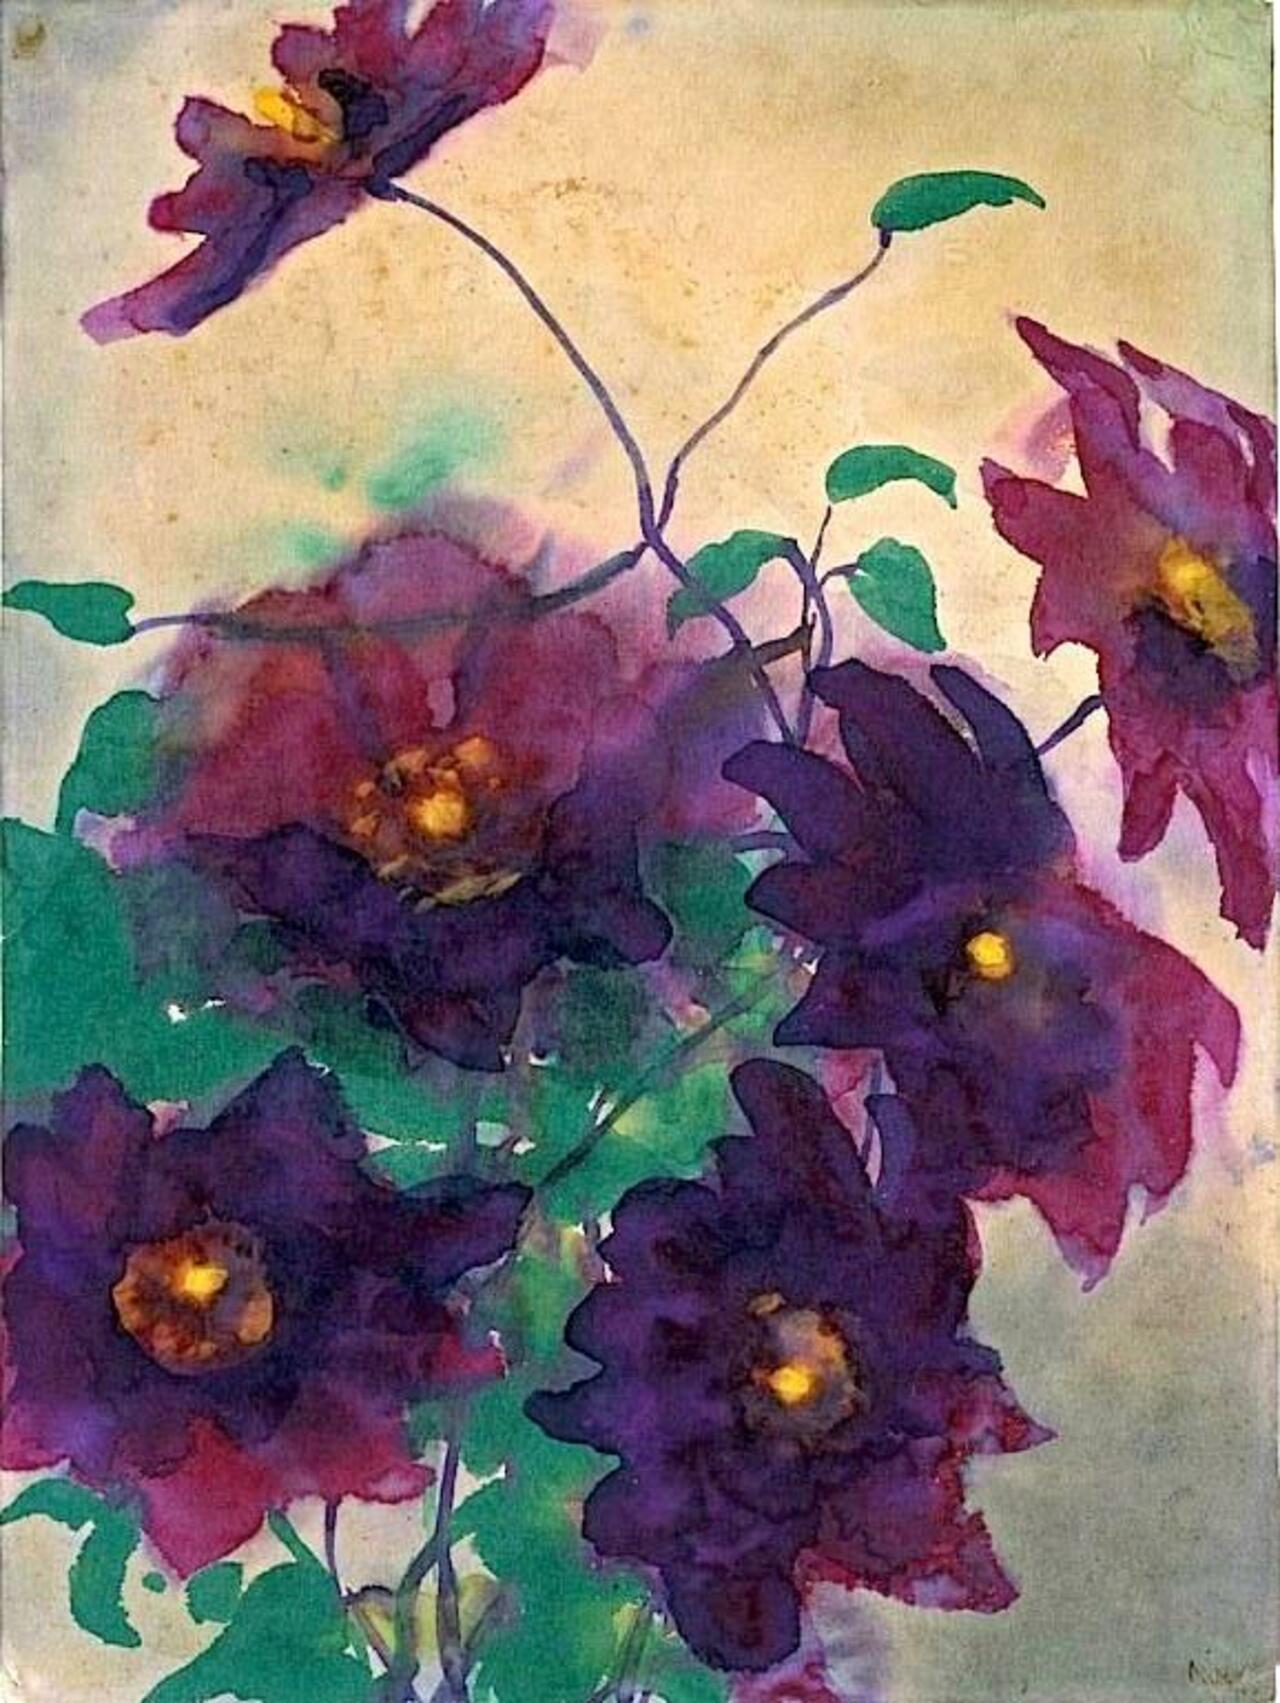 Emil Nolde - Flowers, 1934 #art http://t.co/dLA0Gz2PHz via @leadintogold